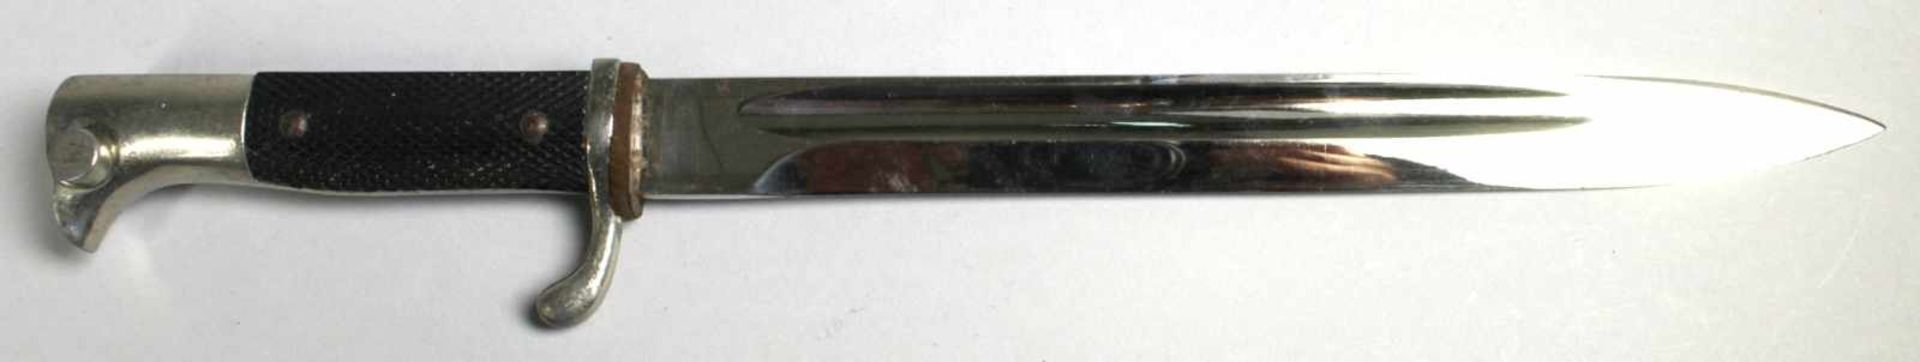 Ausgeh-Bajonett, Drittes Reich, spitz zulaufende, einschneidige Stahlklinge mitbeidseitiger - Bild 2 aus 3